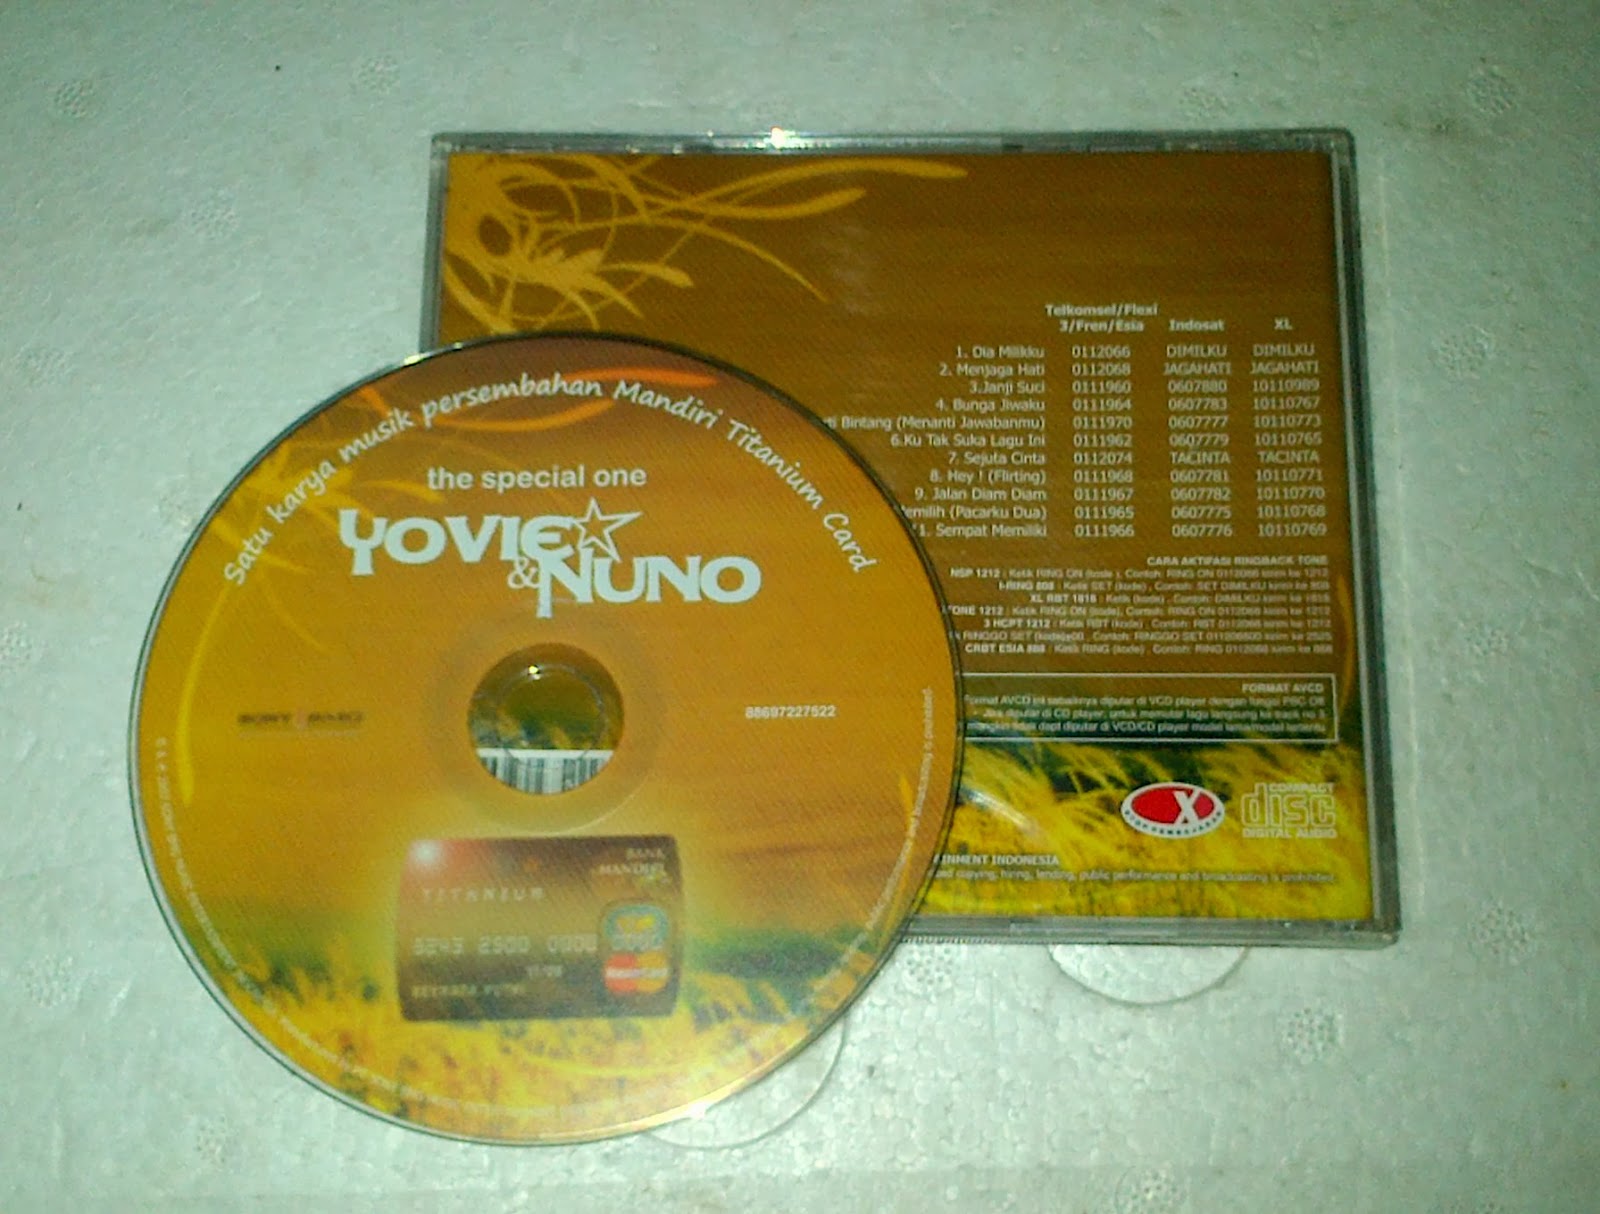 Download lagu Download Lagu Yovie And Nuno Janji Suci Mp3 Uyeshare (6.59 MB) - Free Full Download All Music